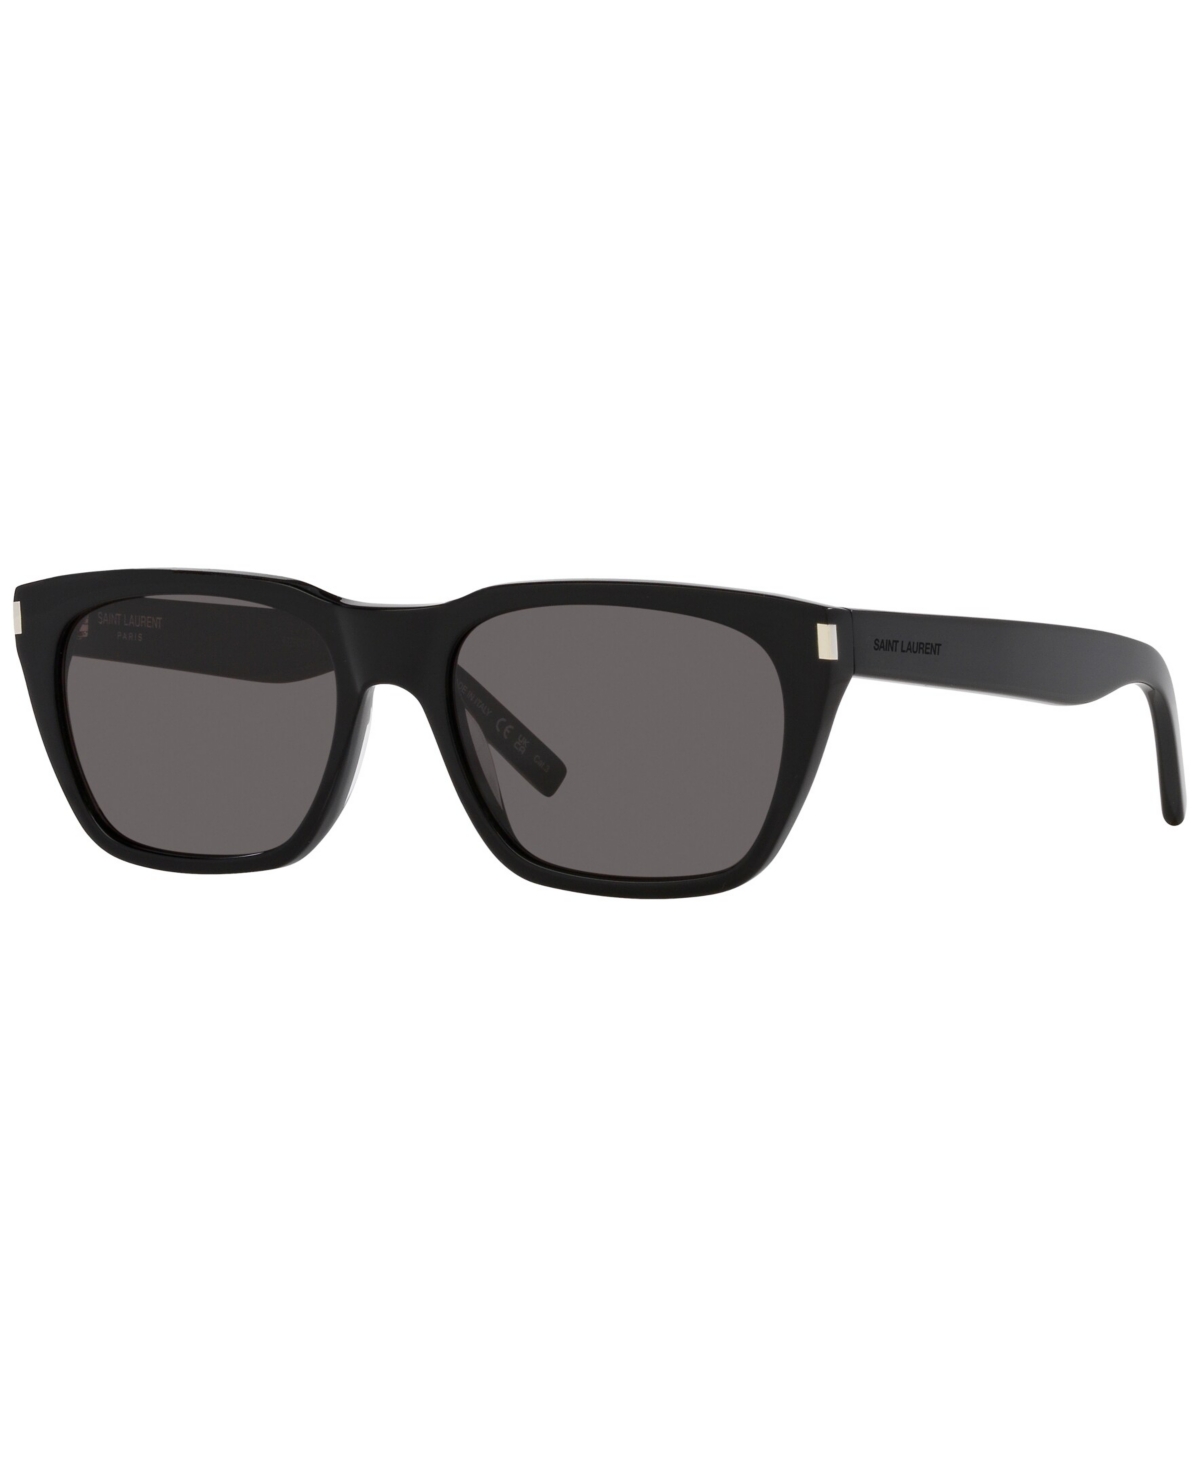 Saint Laurent Men's Sunglasses, Sl 598 In Black